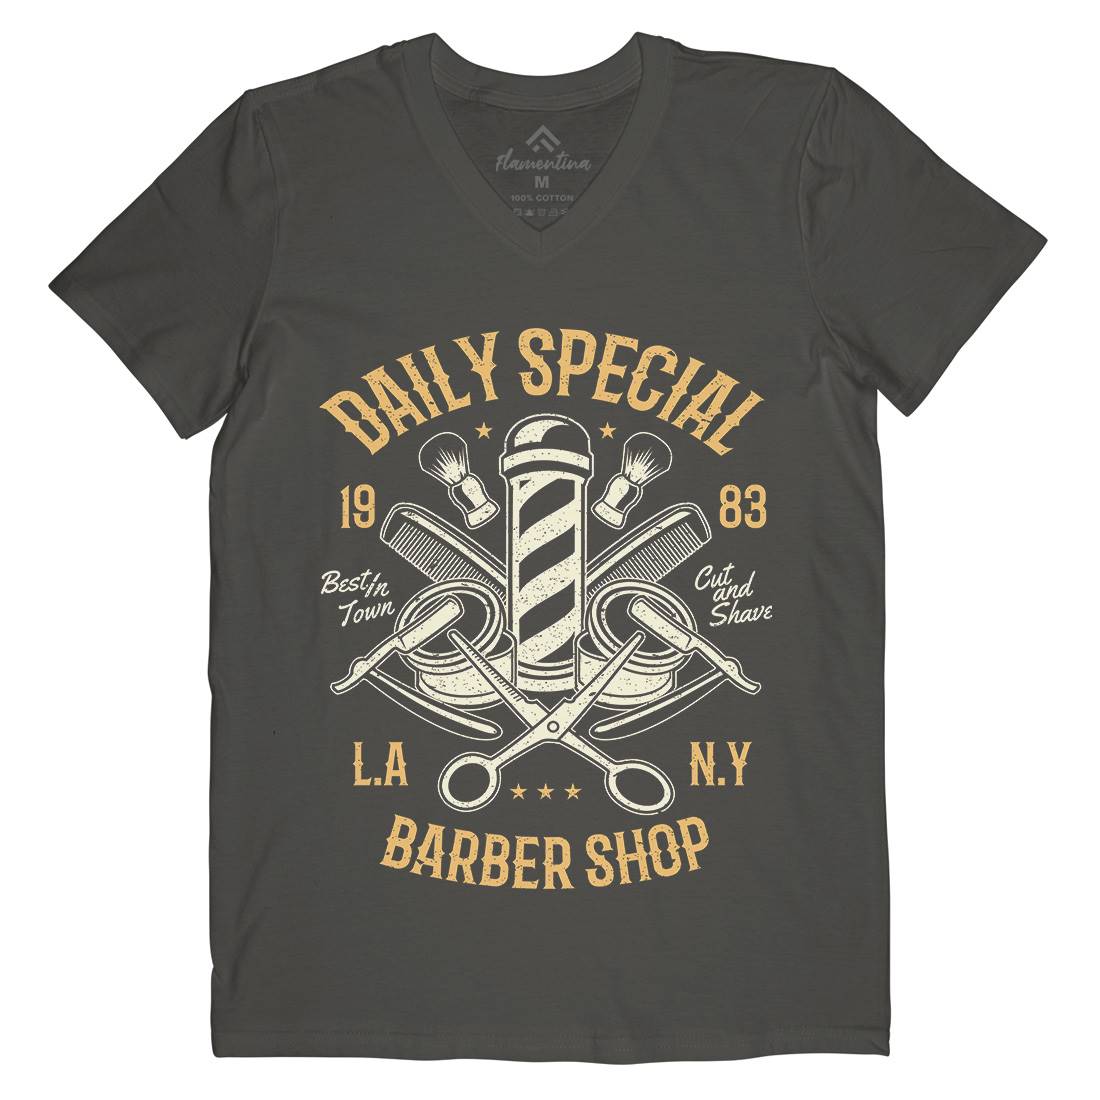 Daily Special Shop Mens V-Neck T-Shirt Barber A041